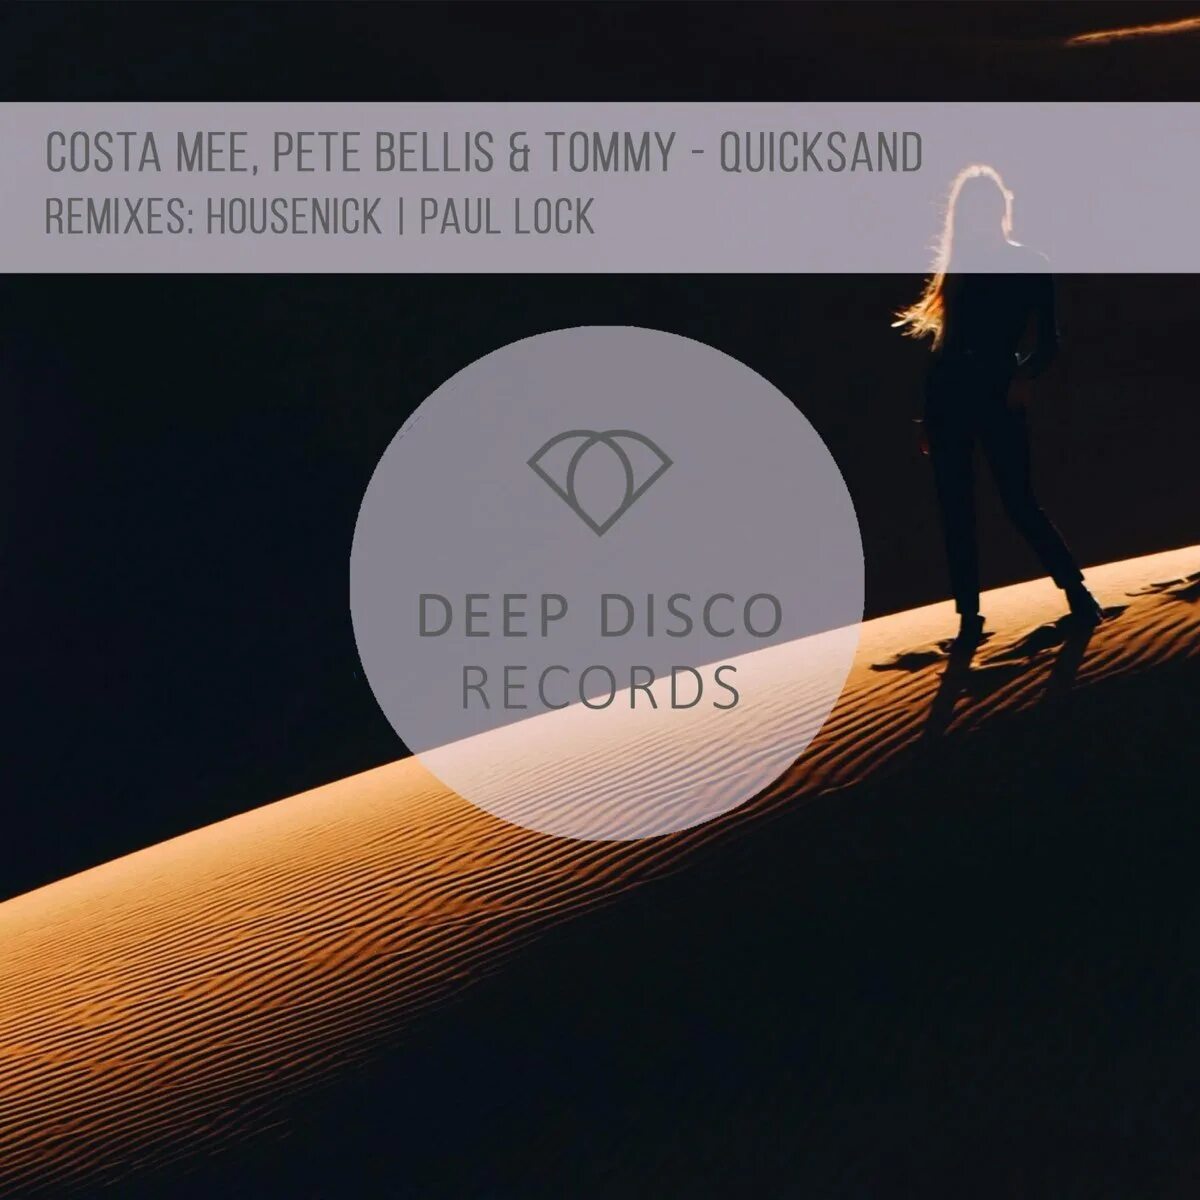 Costa mee & Pete Bellis & Tommy. Paul Lock, Pete Bellis & Tommy. Costa mee & Pete Bellis & Tommy Quicksand - Single. Costa mee Remix.